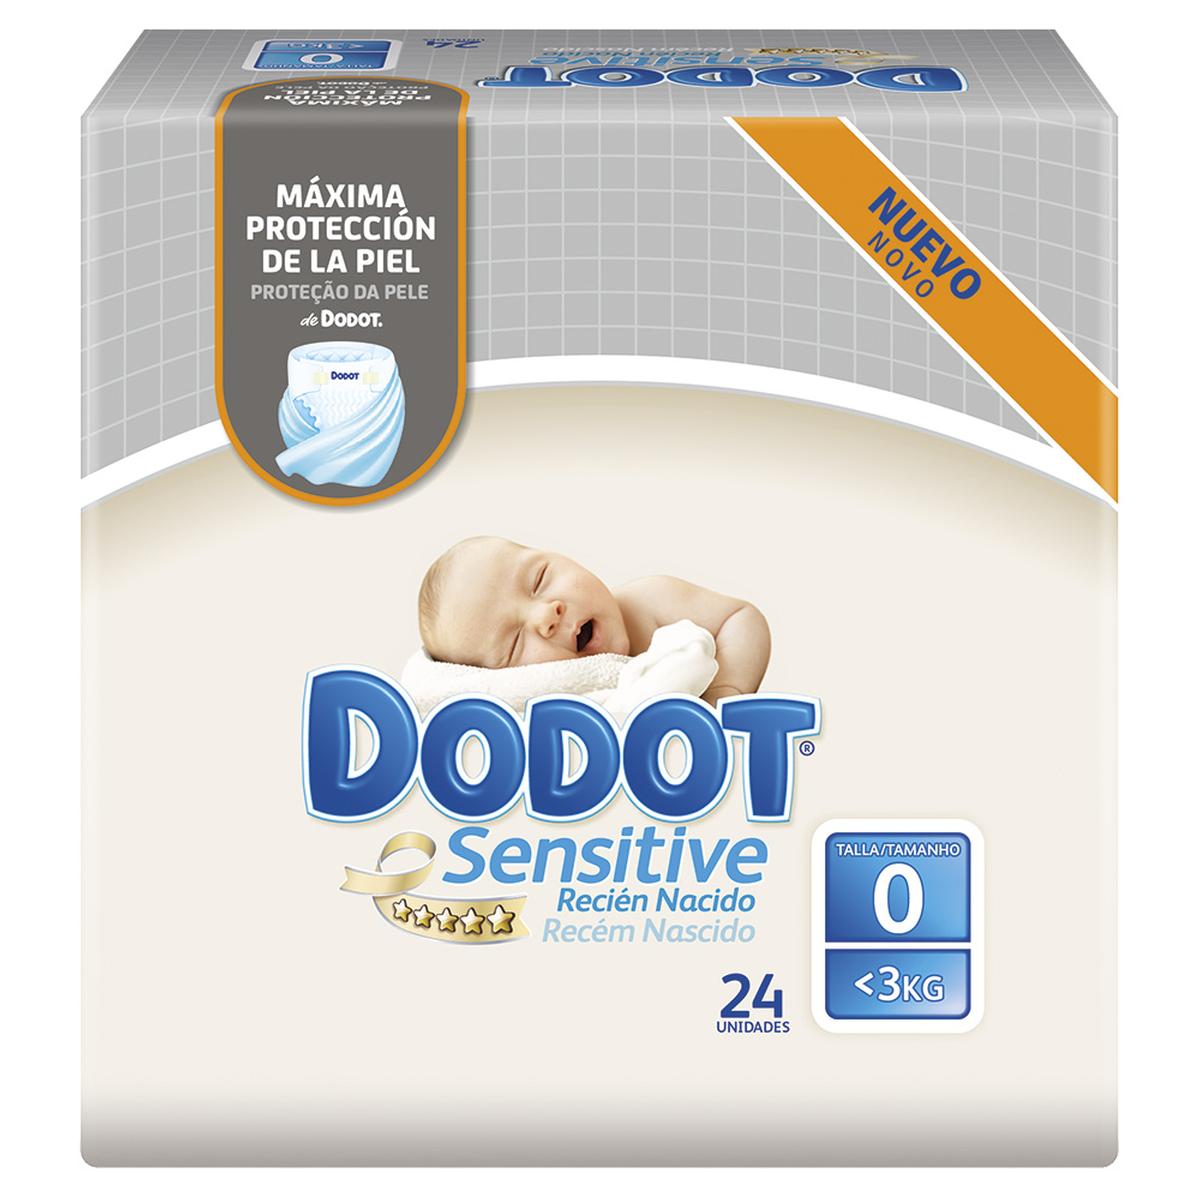 Dodot - Fraldas Sensitive Recém Nascido T0 (1.5-2.5 kg) 24 unidades. | Recém -nascido | Loja de brinquedos e videojogos Online Toysrus